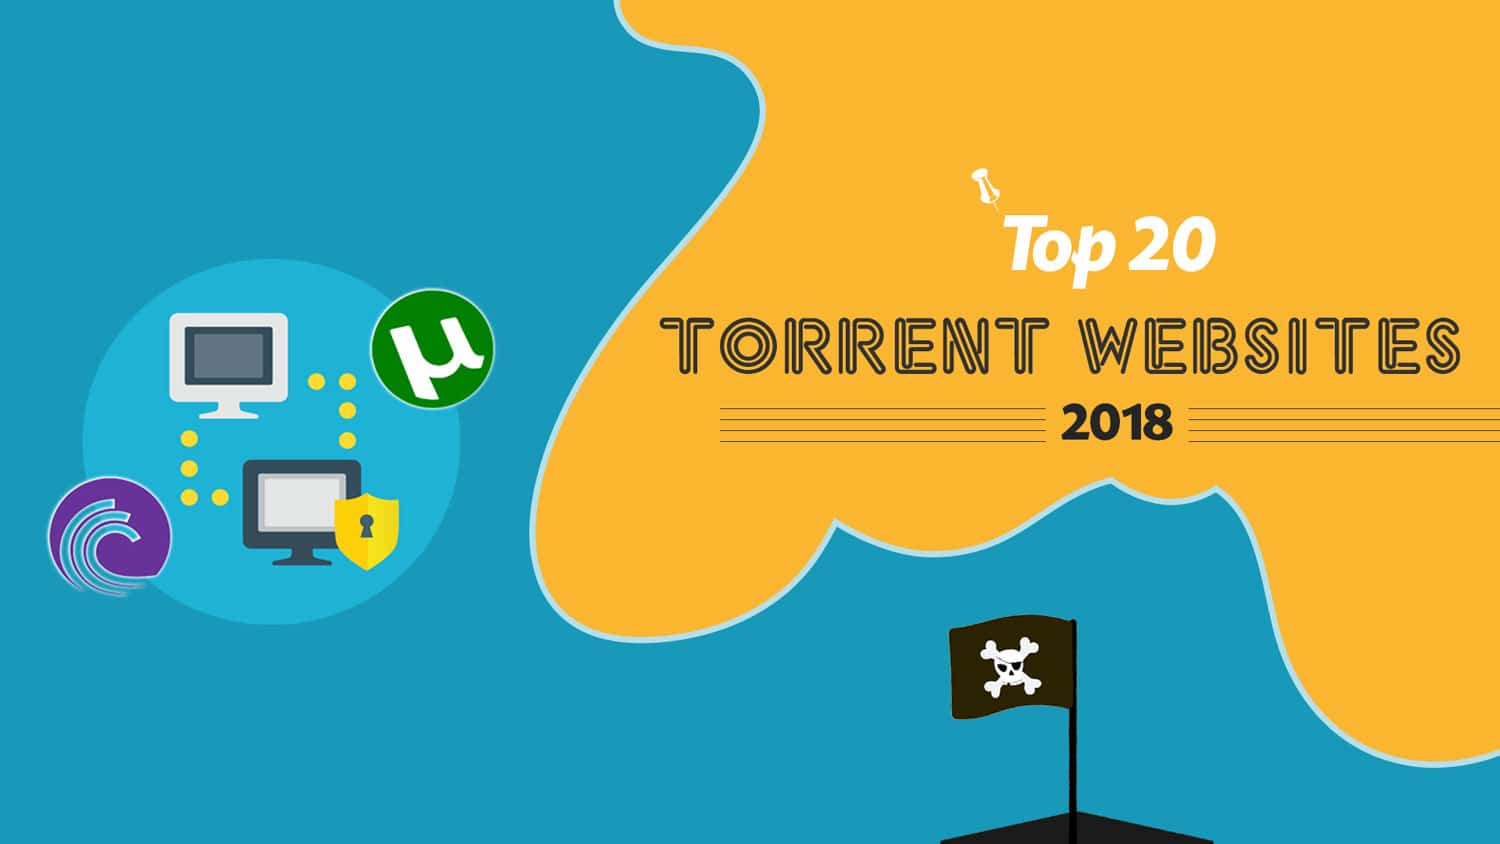 Top-20-Best-Torrent-websites-of-2017-2018.jpg